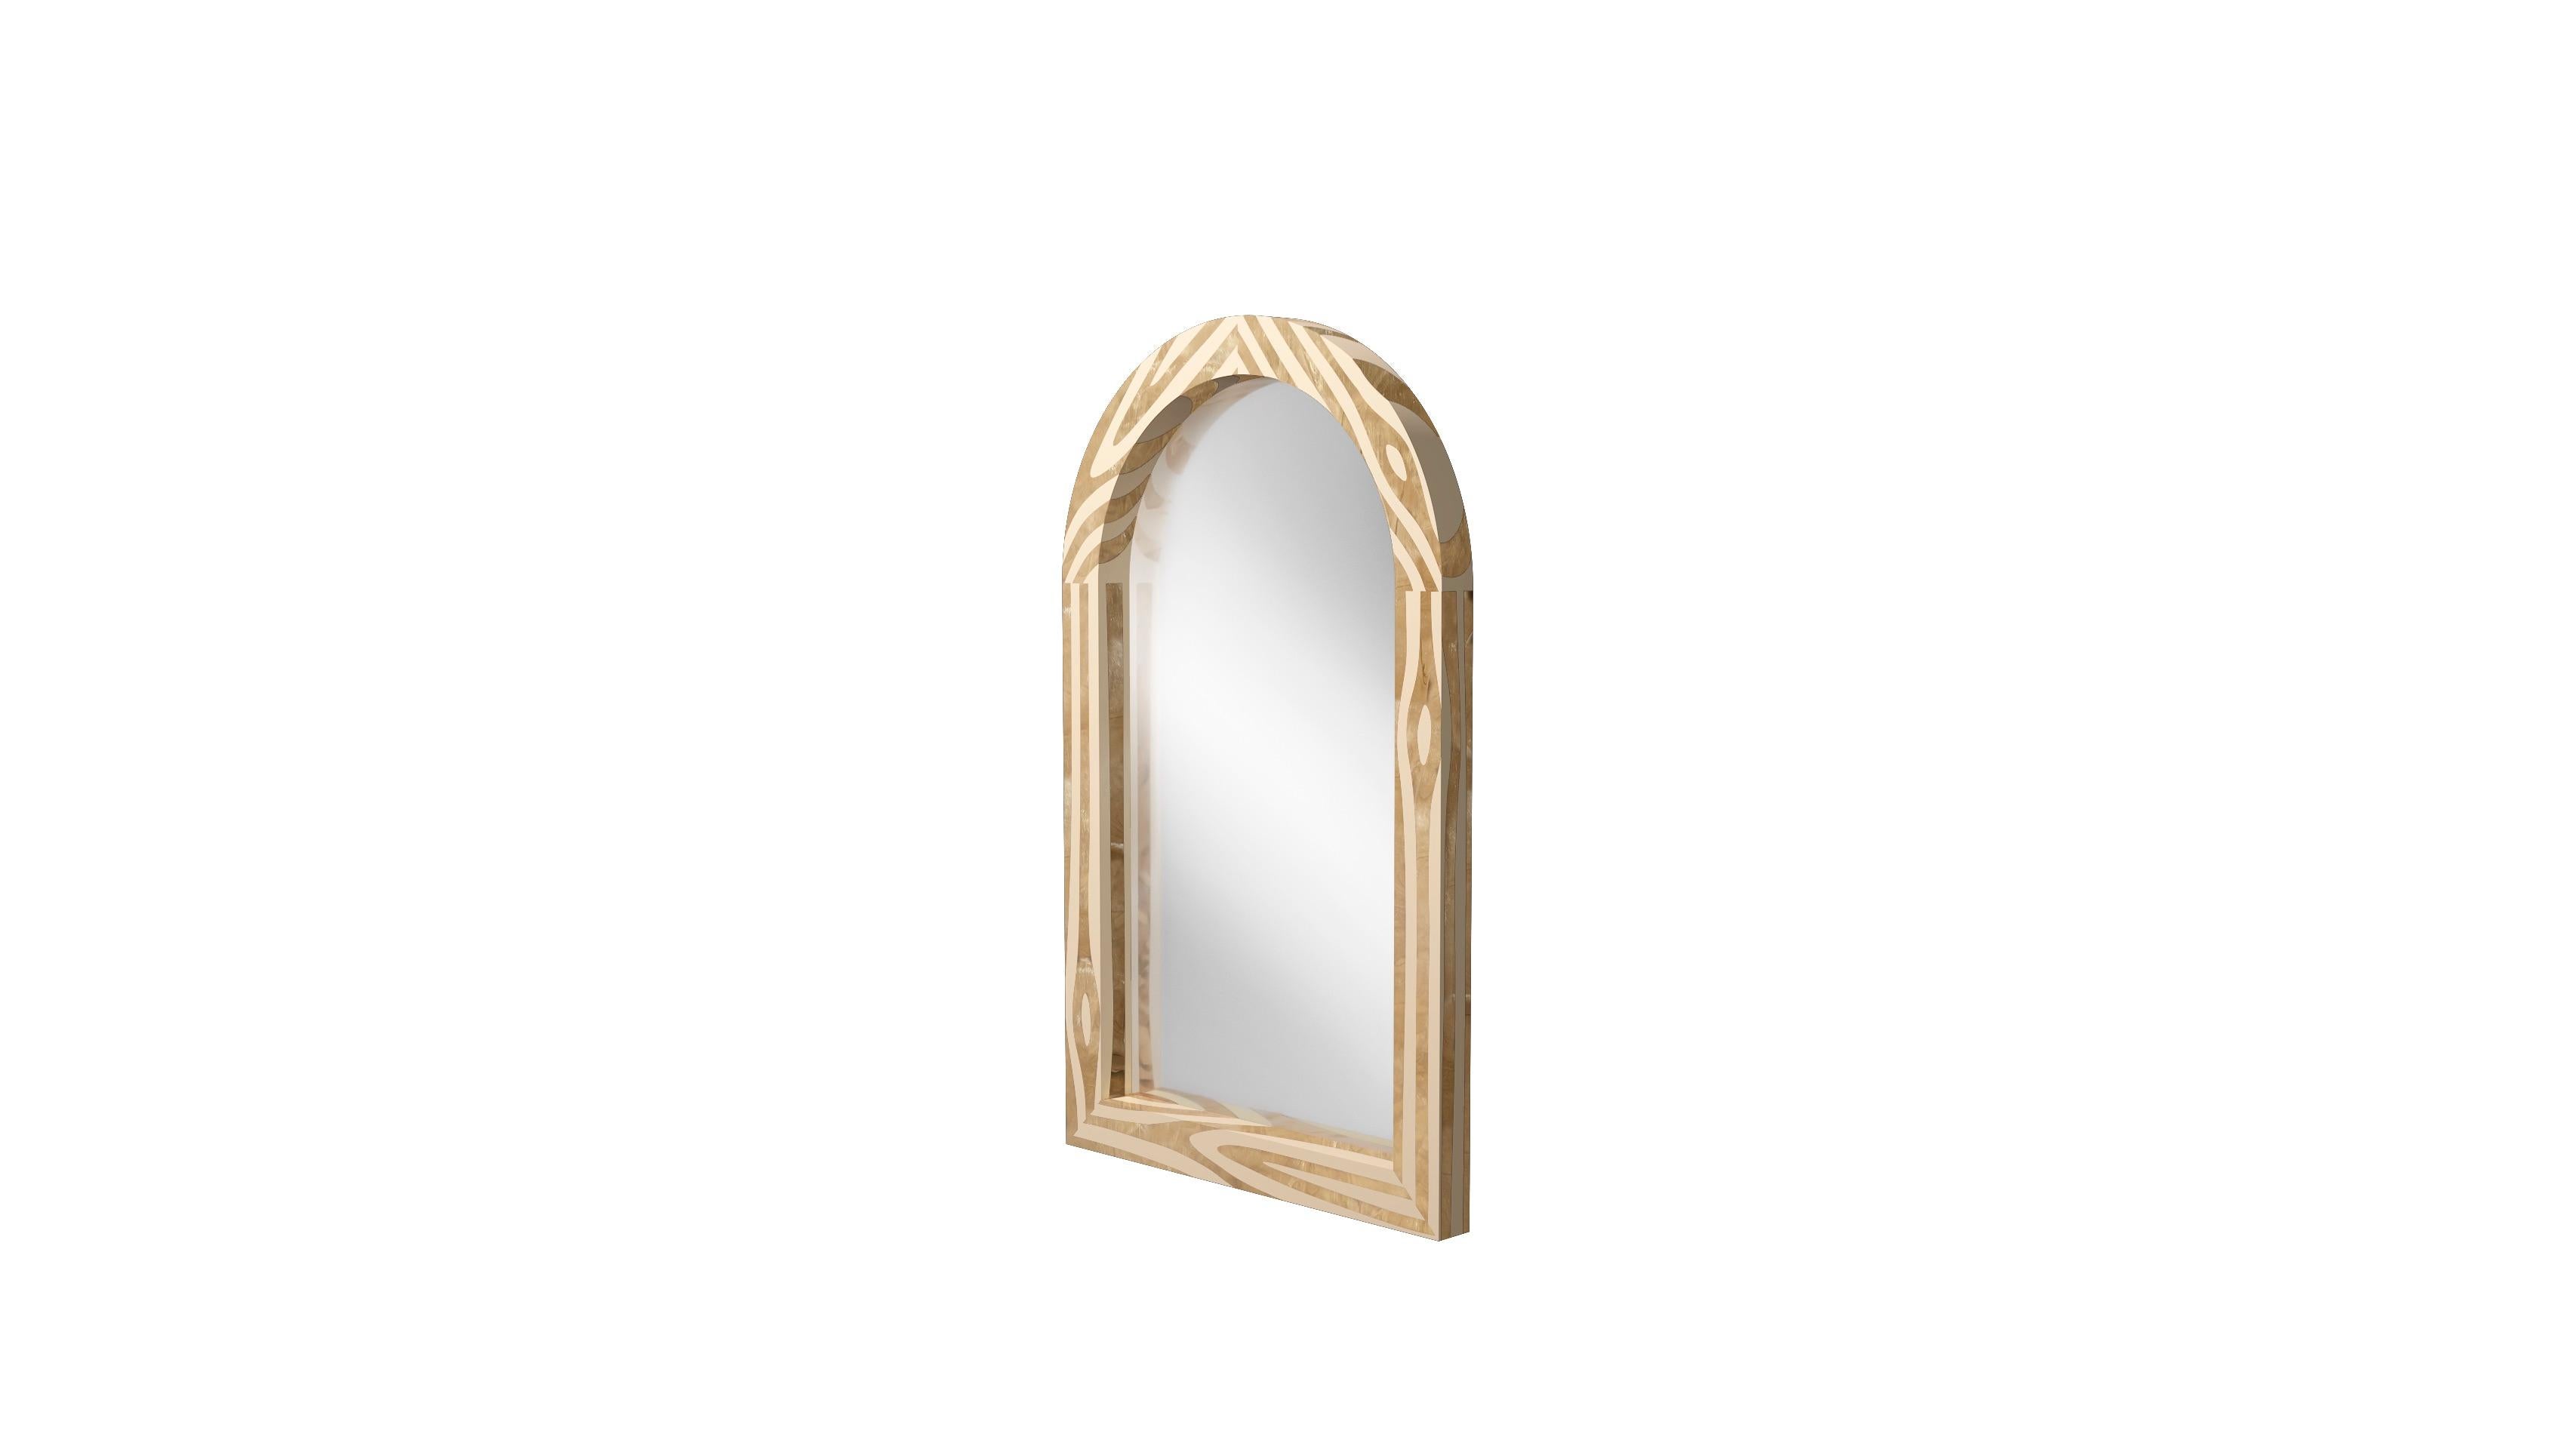 Der Wandkonsolenspiegel Forest mit Messingintarsie von Marcantonio ist ein gewölbter Spiegel, dessen Rahmen mit einer Messingintarsie versehen ist, die an die Schönheit des natürlichen Holzes erinnert. 

Für seine ersten Kreationen stellte